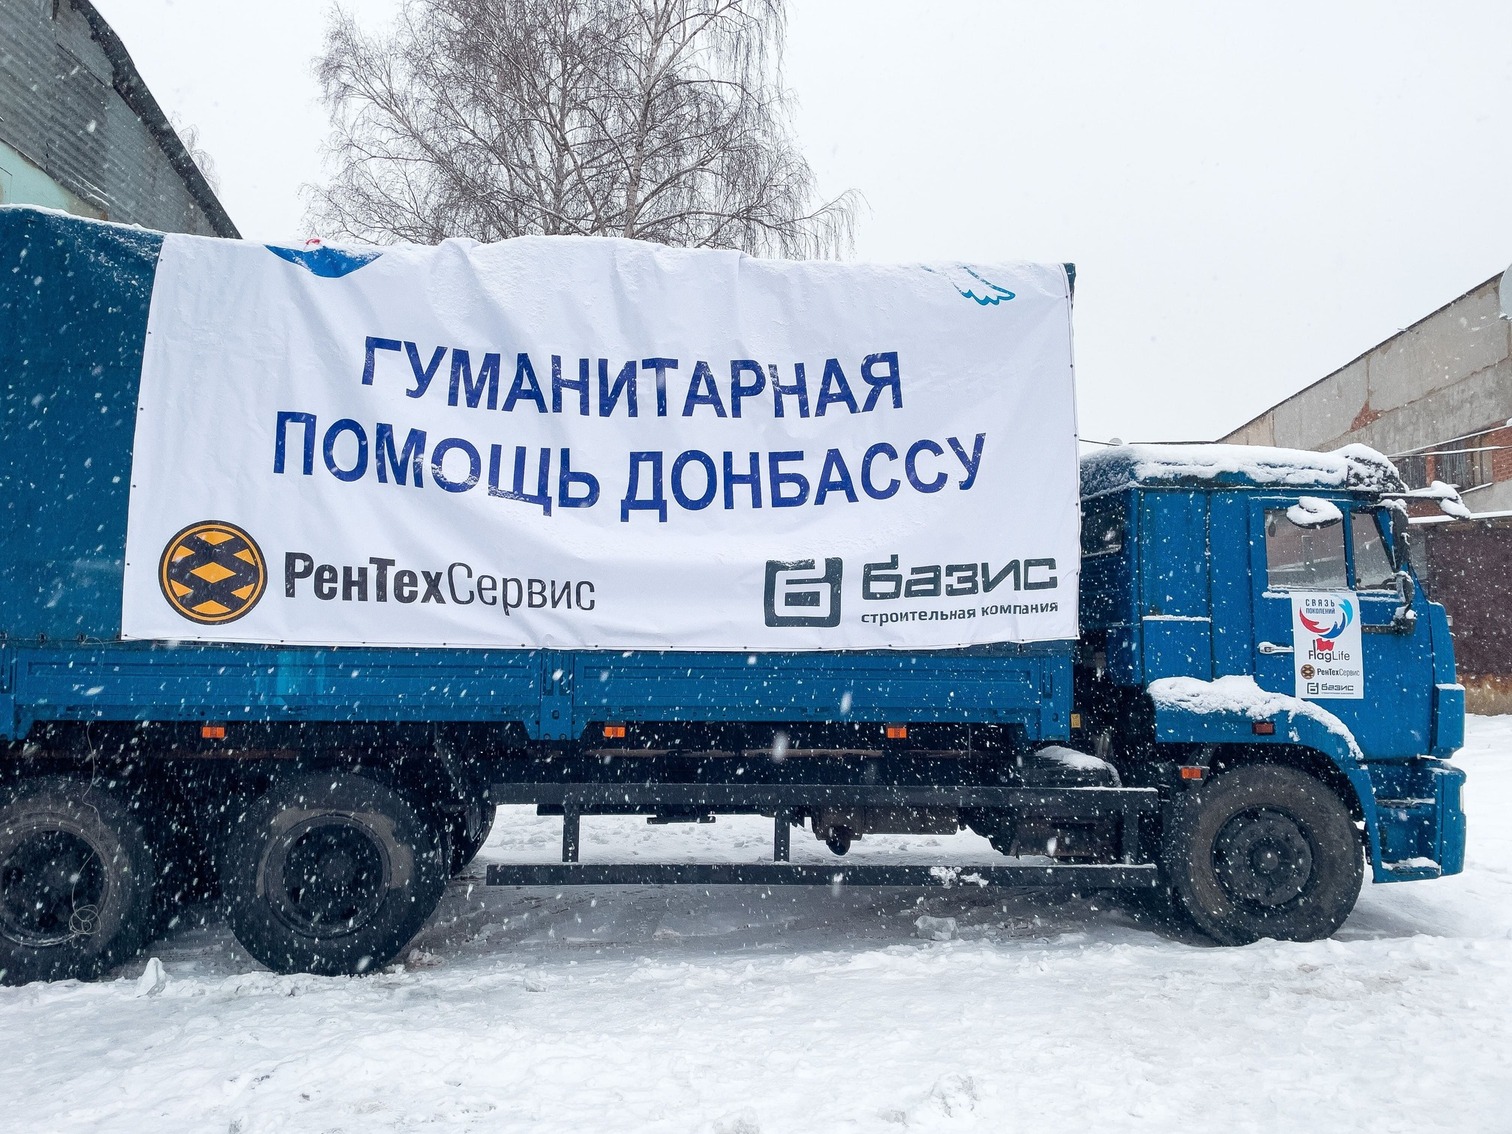 Участие в акции «Гуманитарная помощь Донбассу».